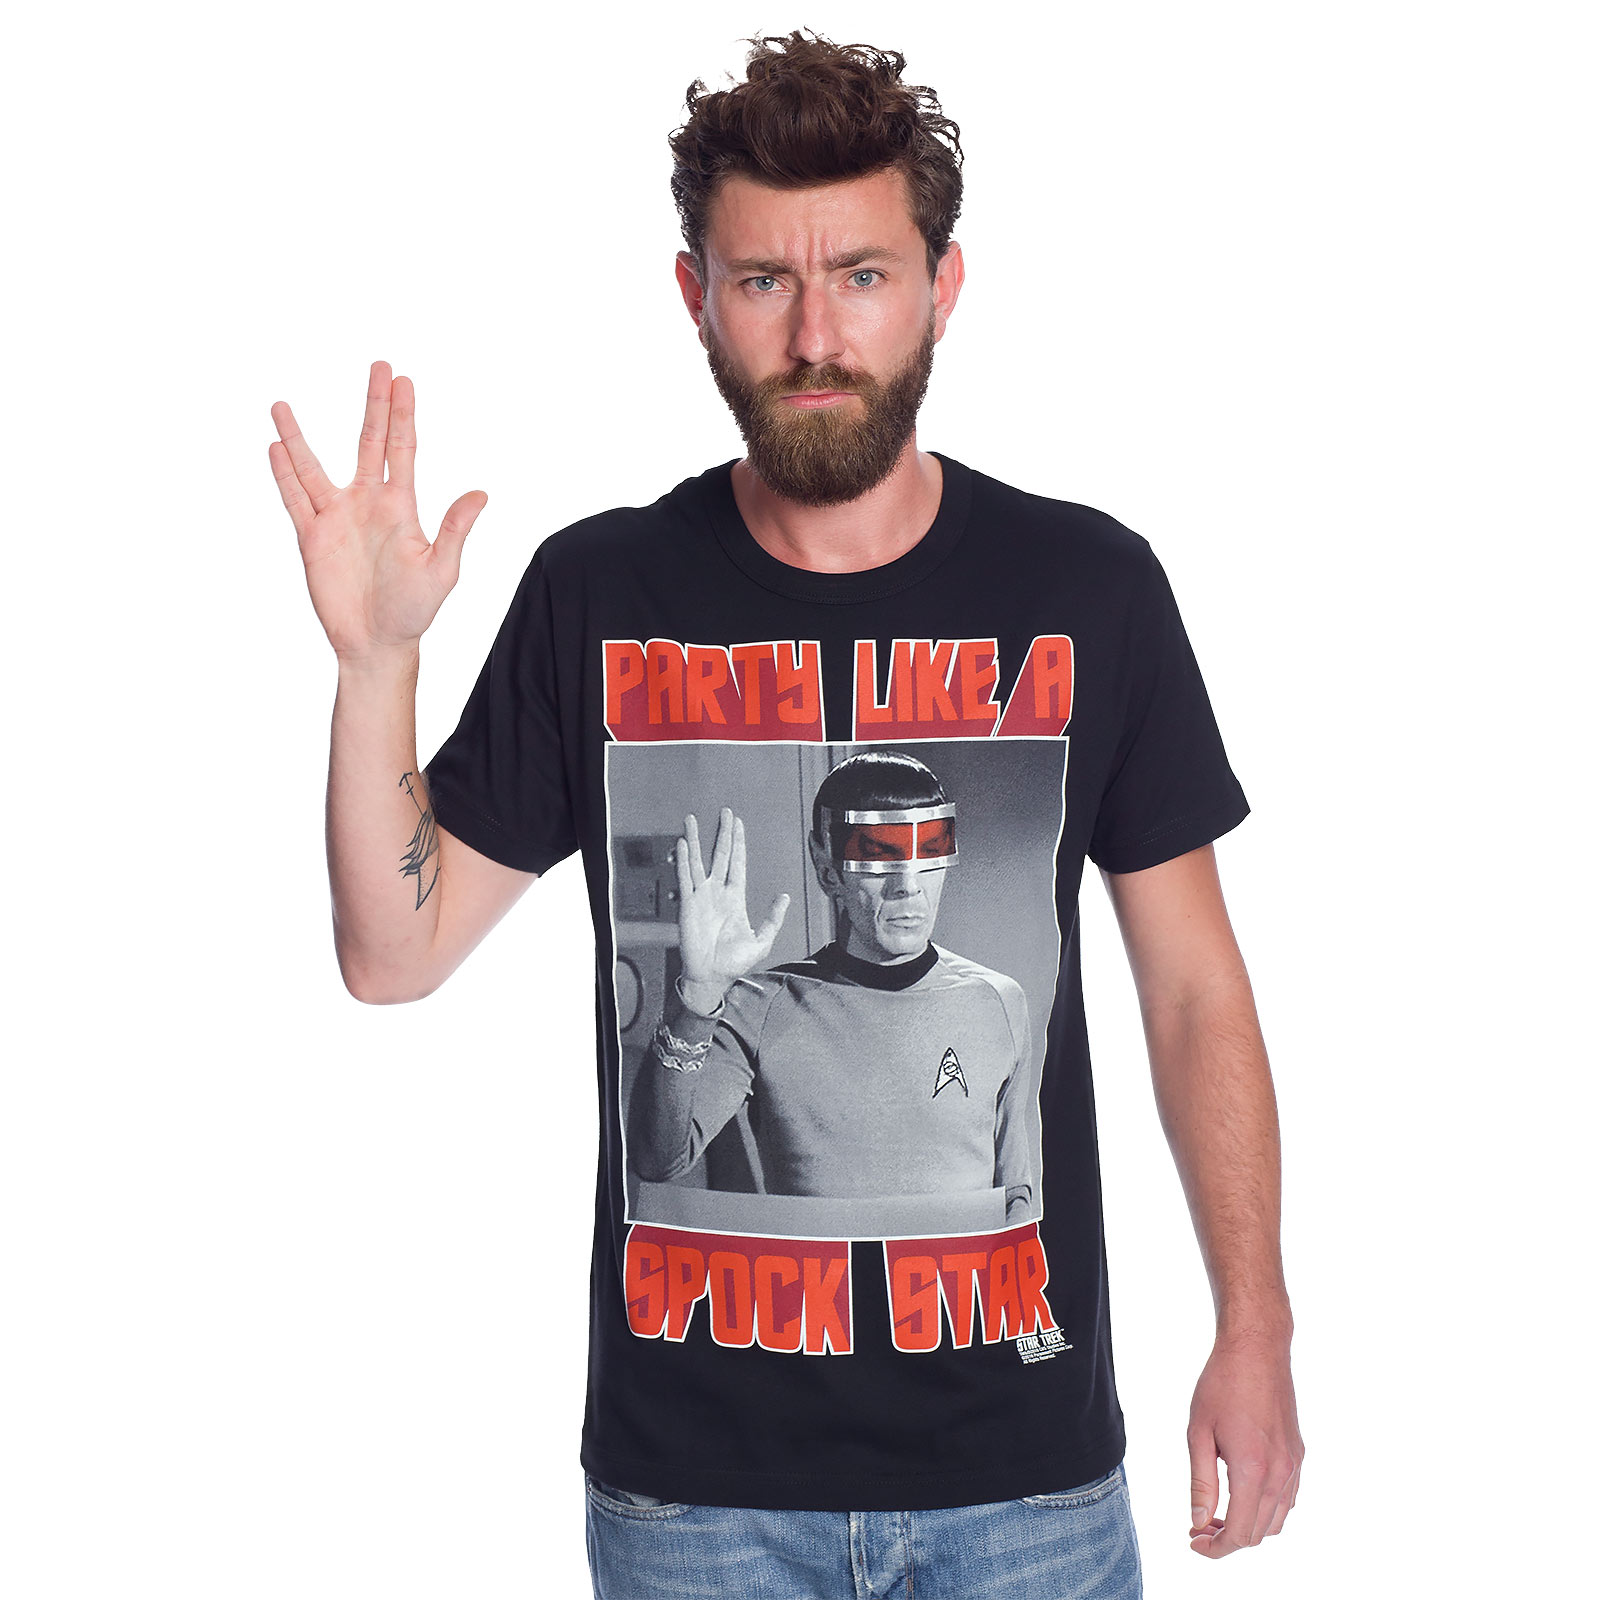 Star Trek - Spock Star T-Shirt Black